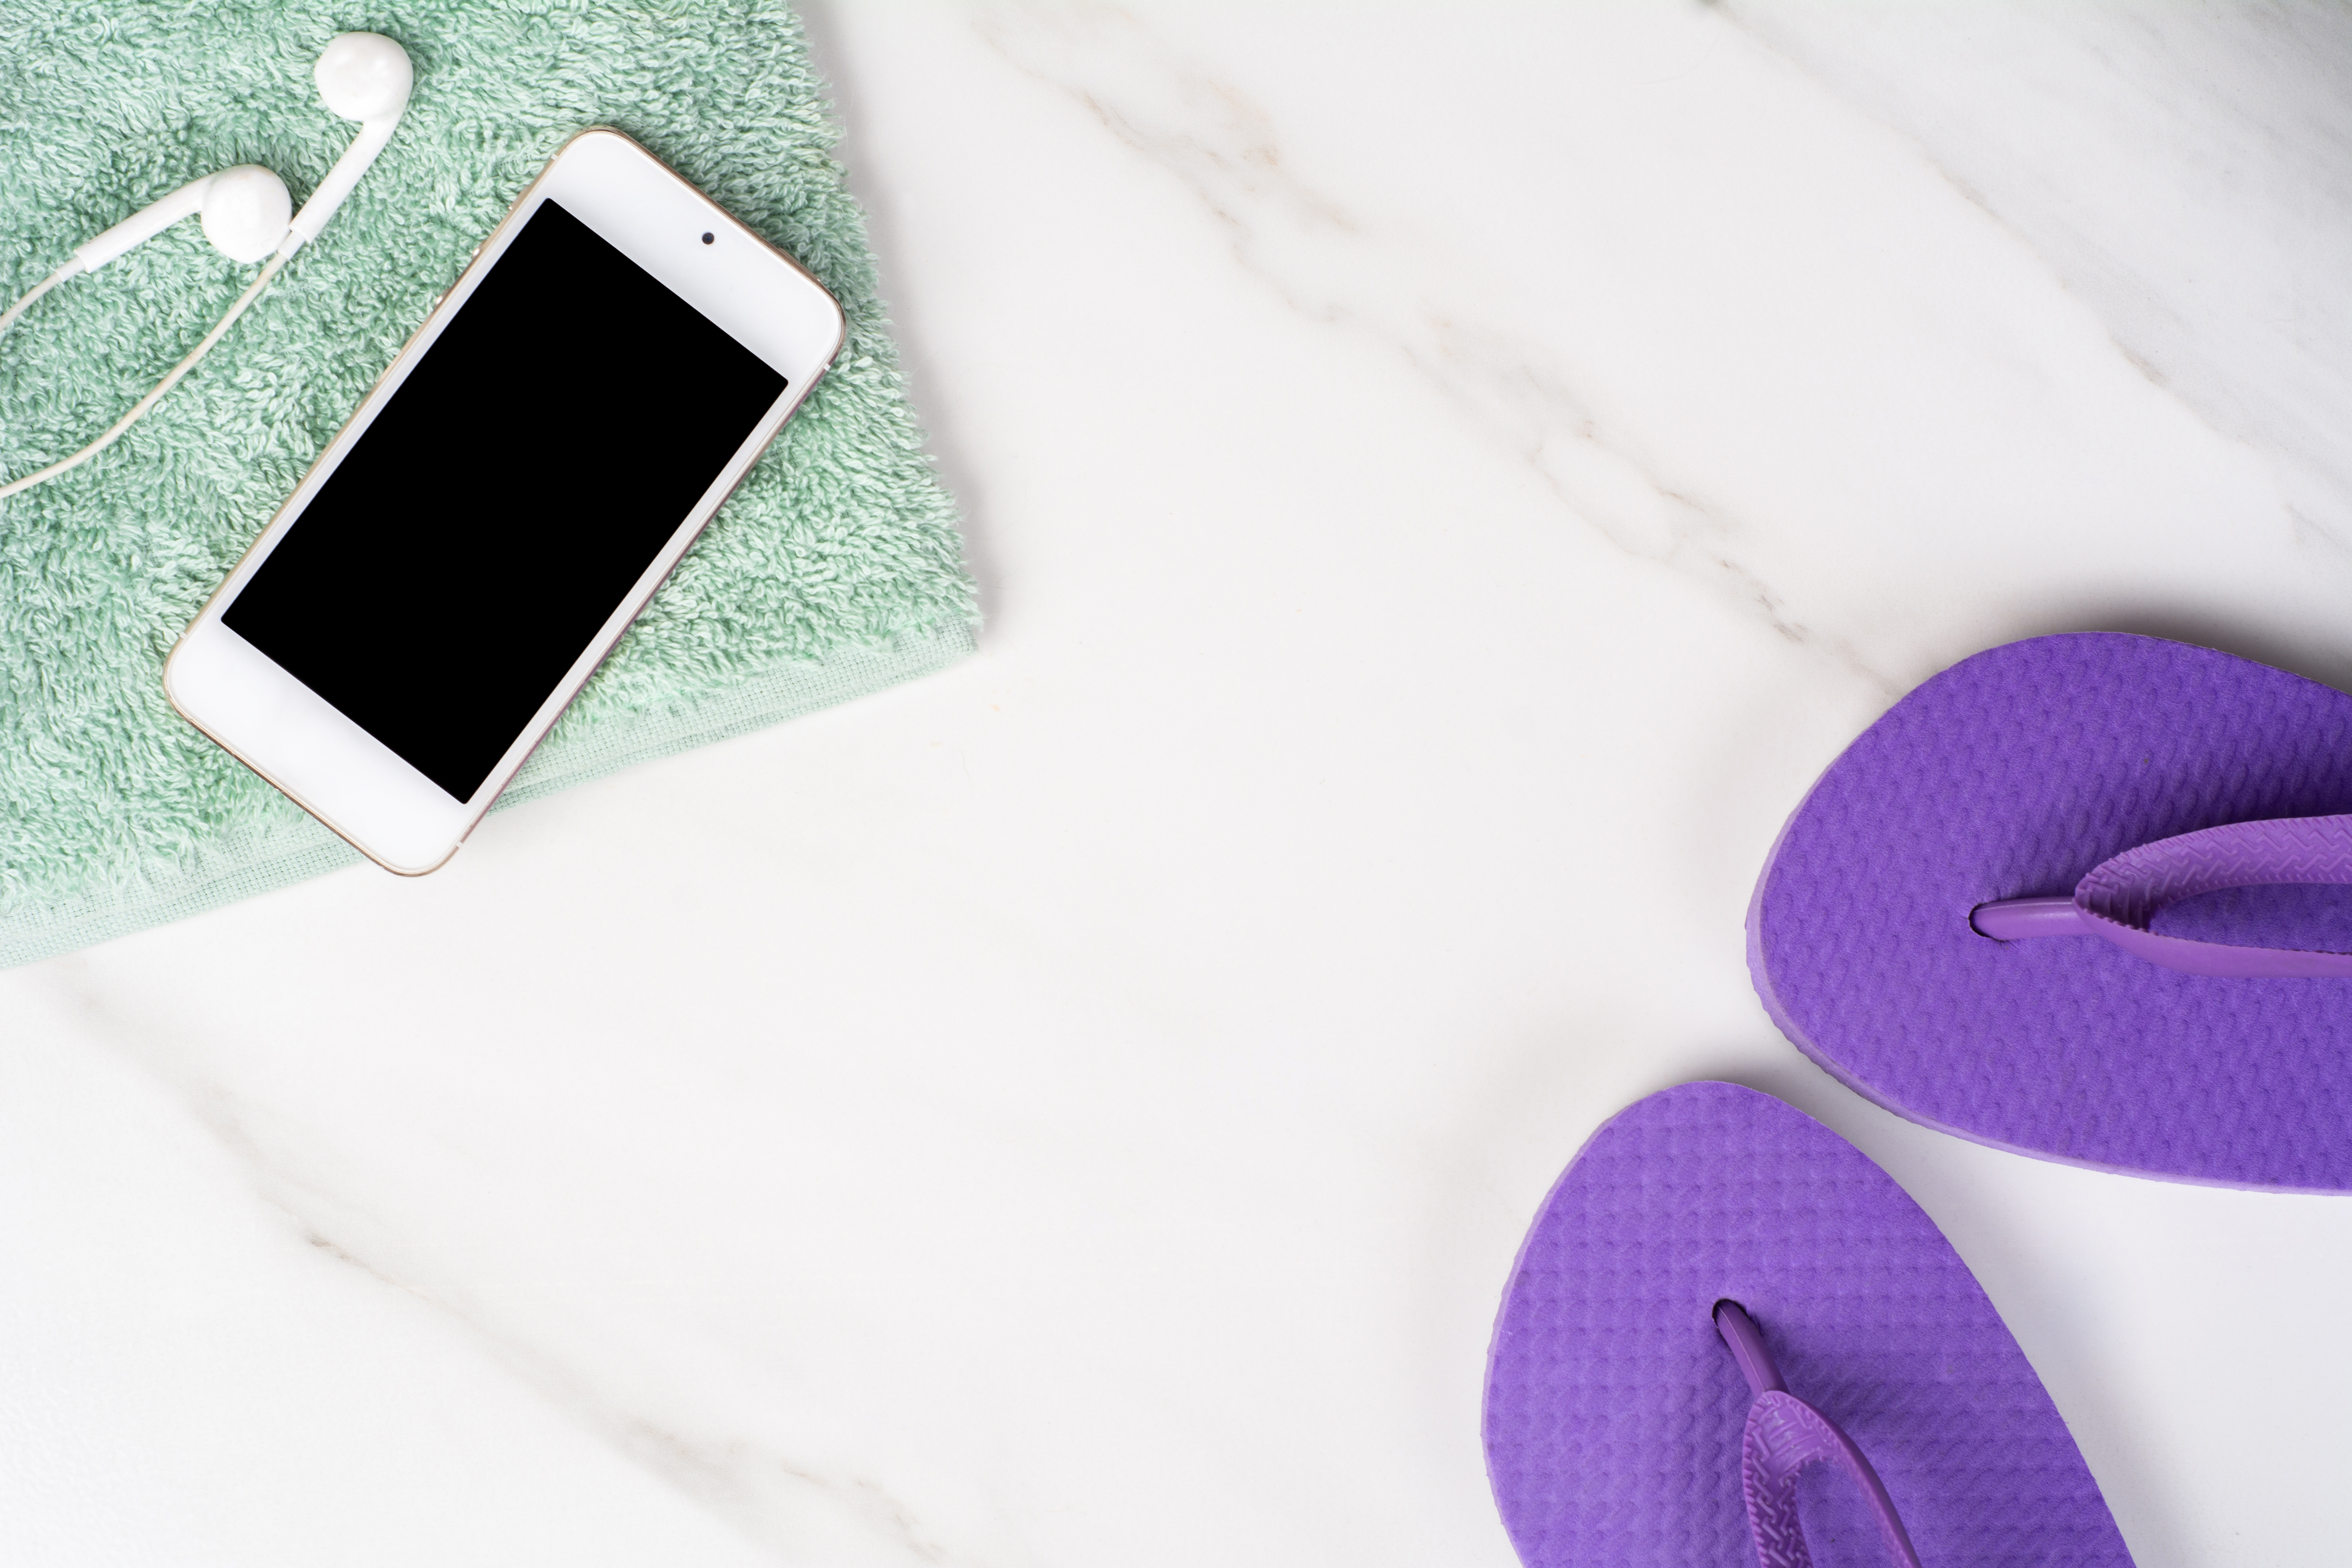 smartphone, flip flops and towel